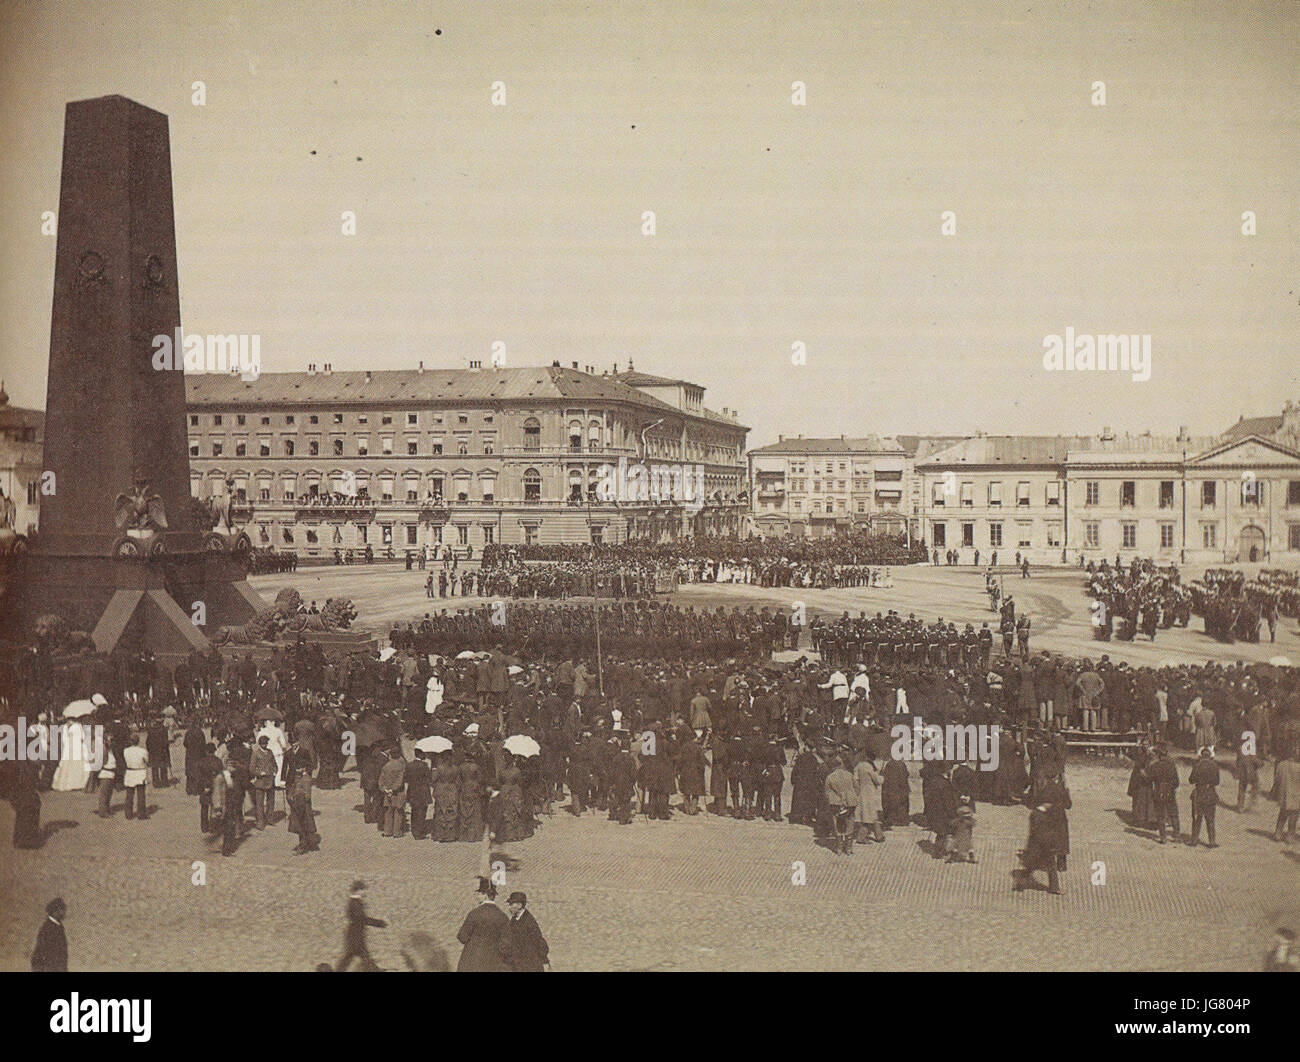 Uroczystość położenia kamienia węgielnego pod sobór św. Aleksandra Newskiego na placu Saskim 30 sierpnia 1894 Stock Photo